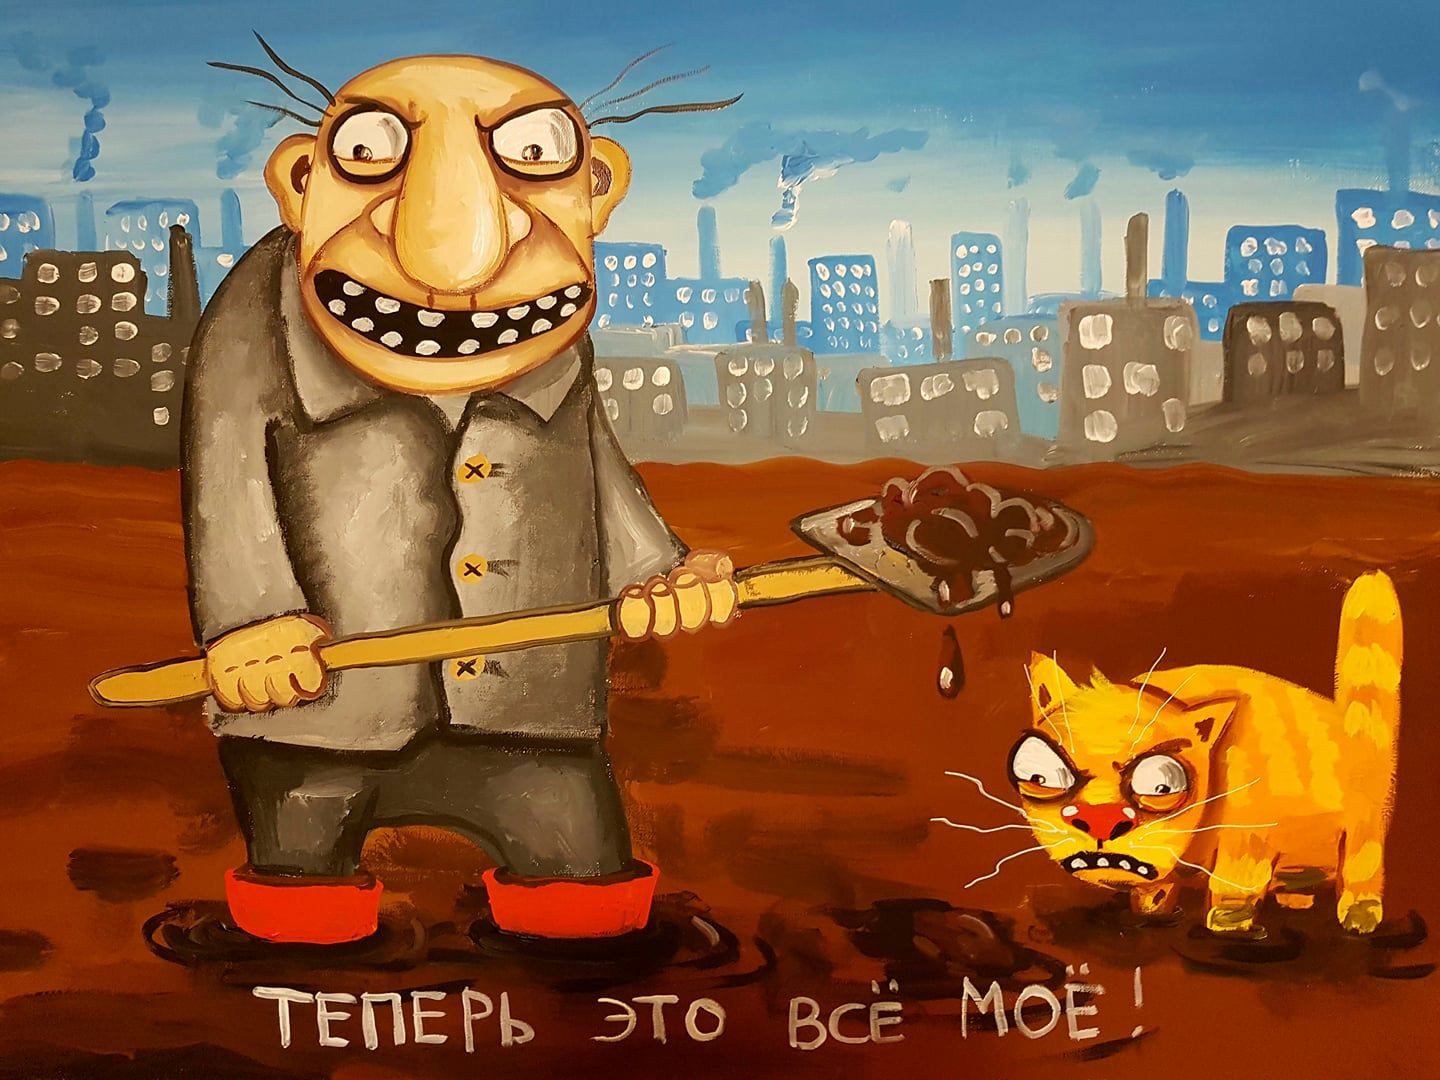 Вася нашел несколько интернет магазинов. Вася Ложкин Азовсталь. Художник коты Вася Ложкин.